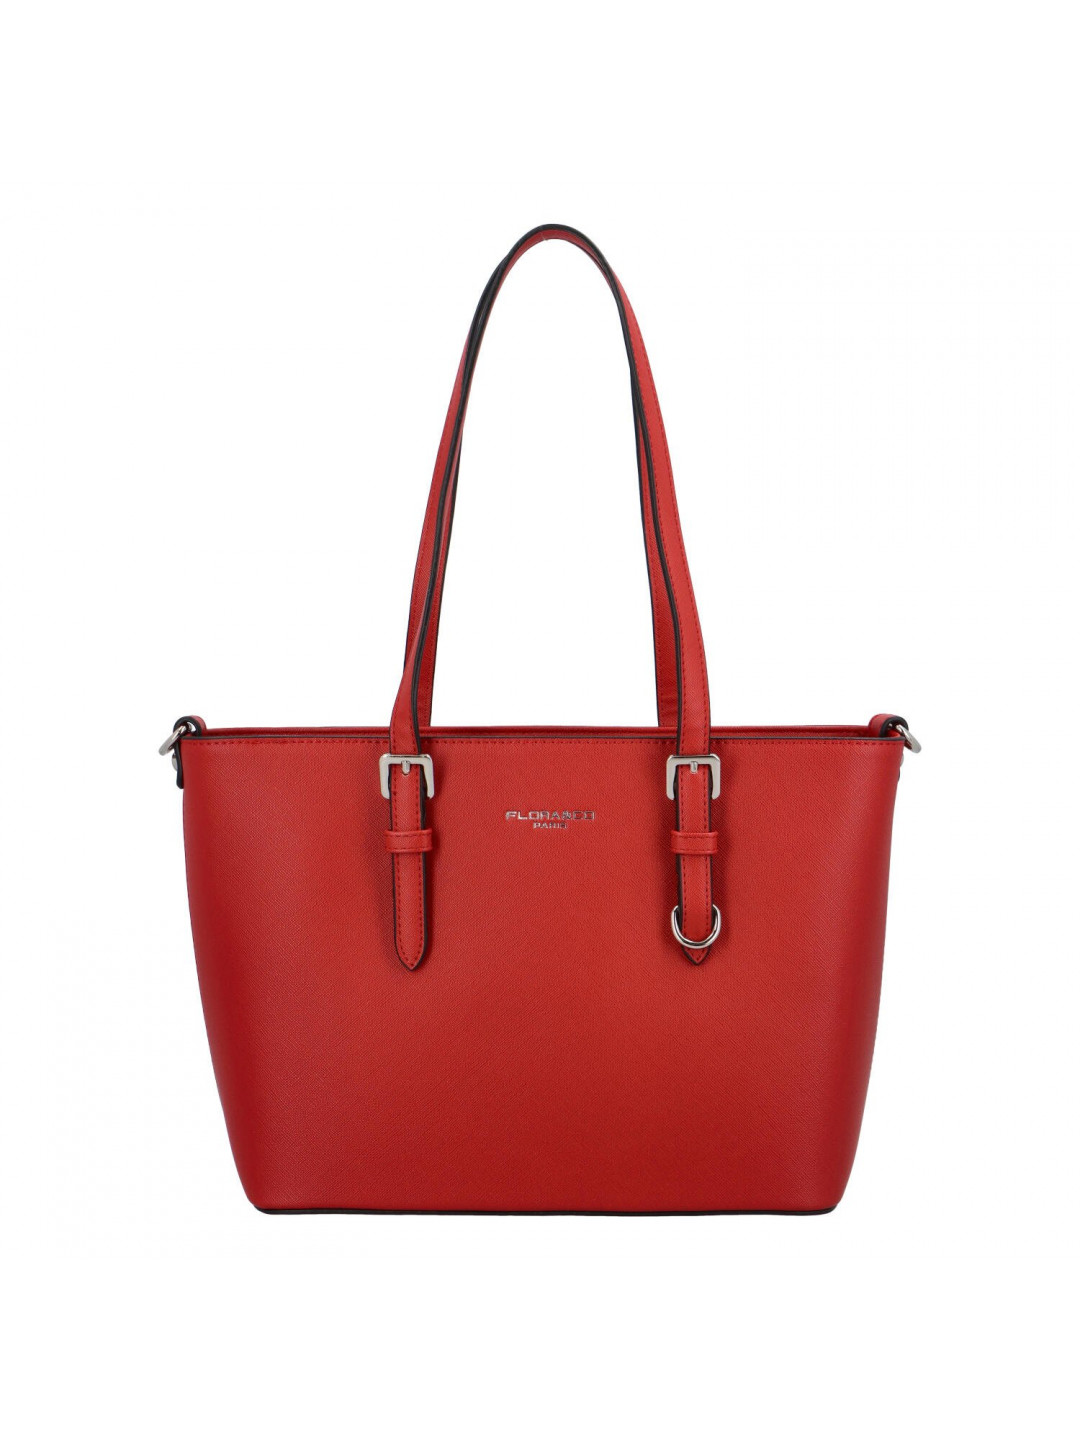 Dámská kabelka přes rameno saffiano červená – FLORA & CO Aileen